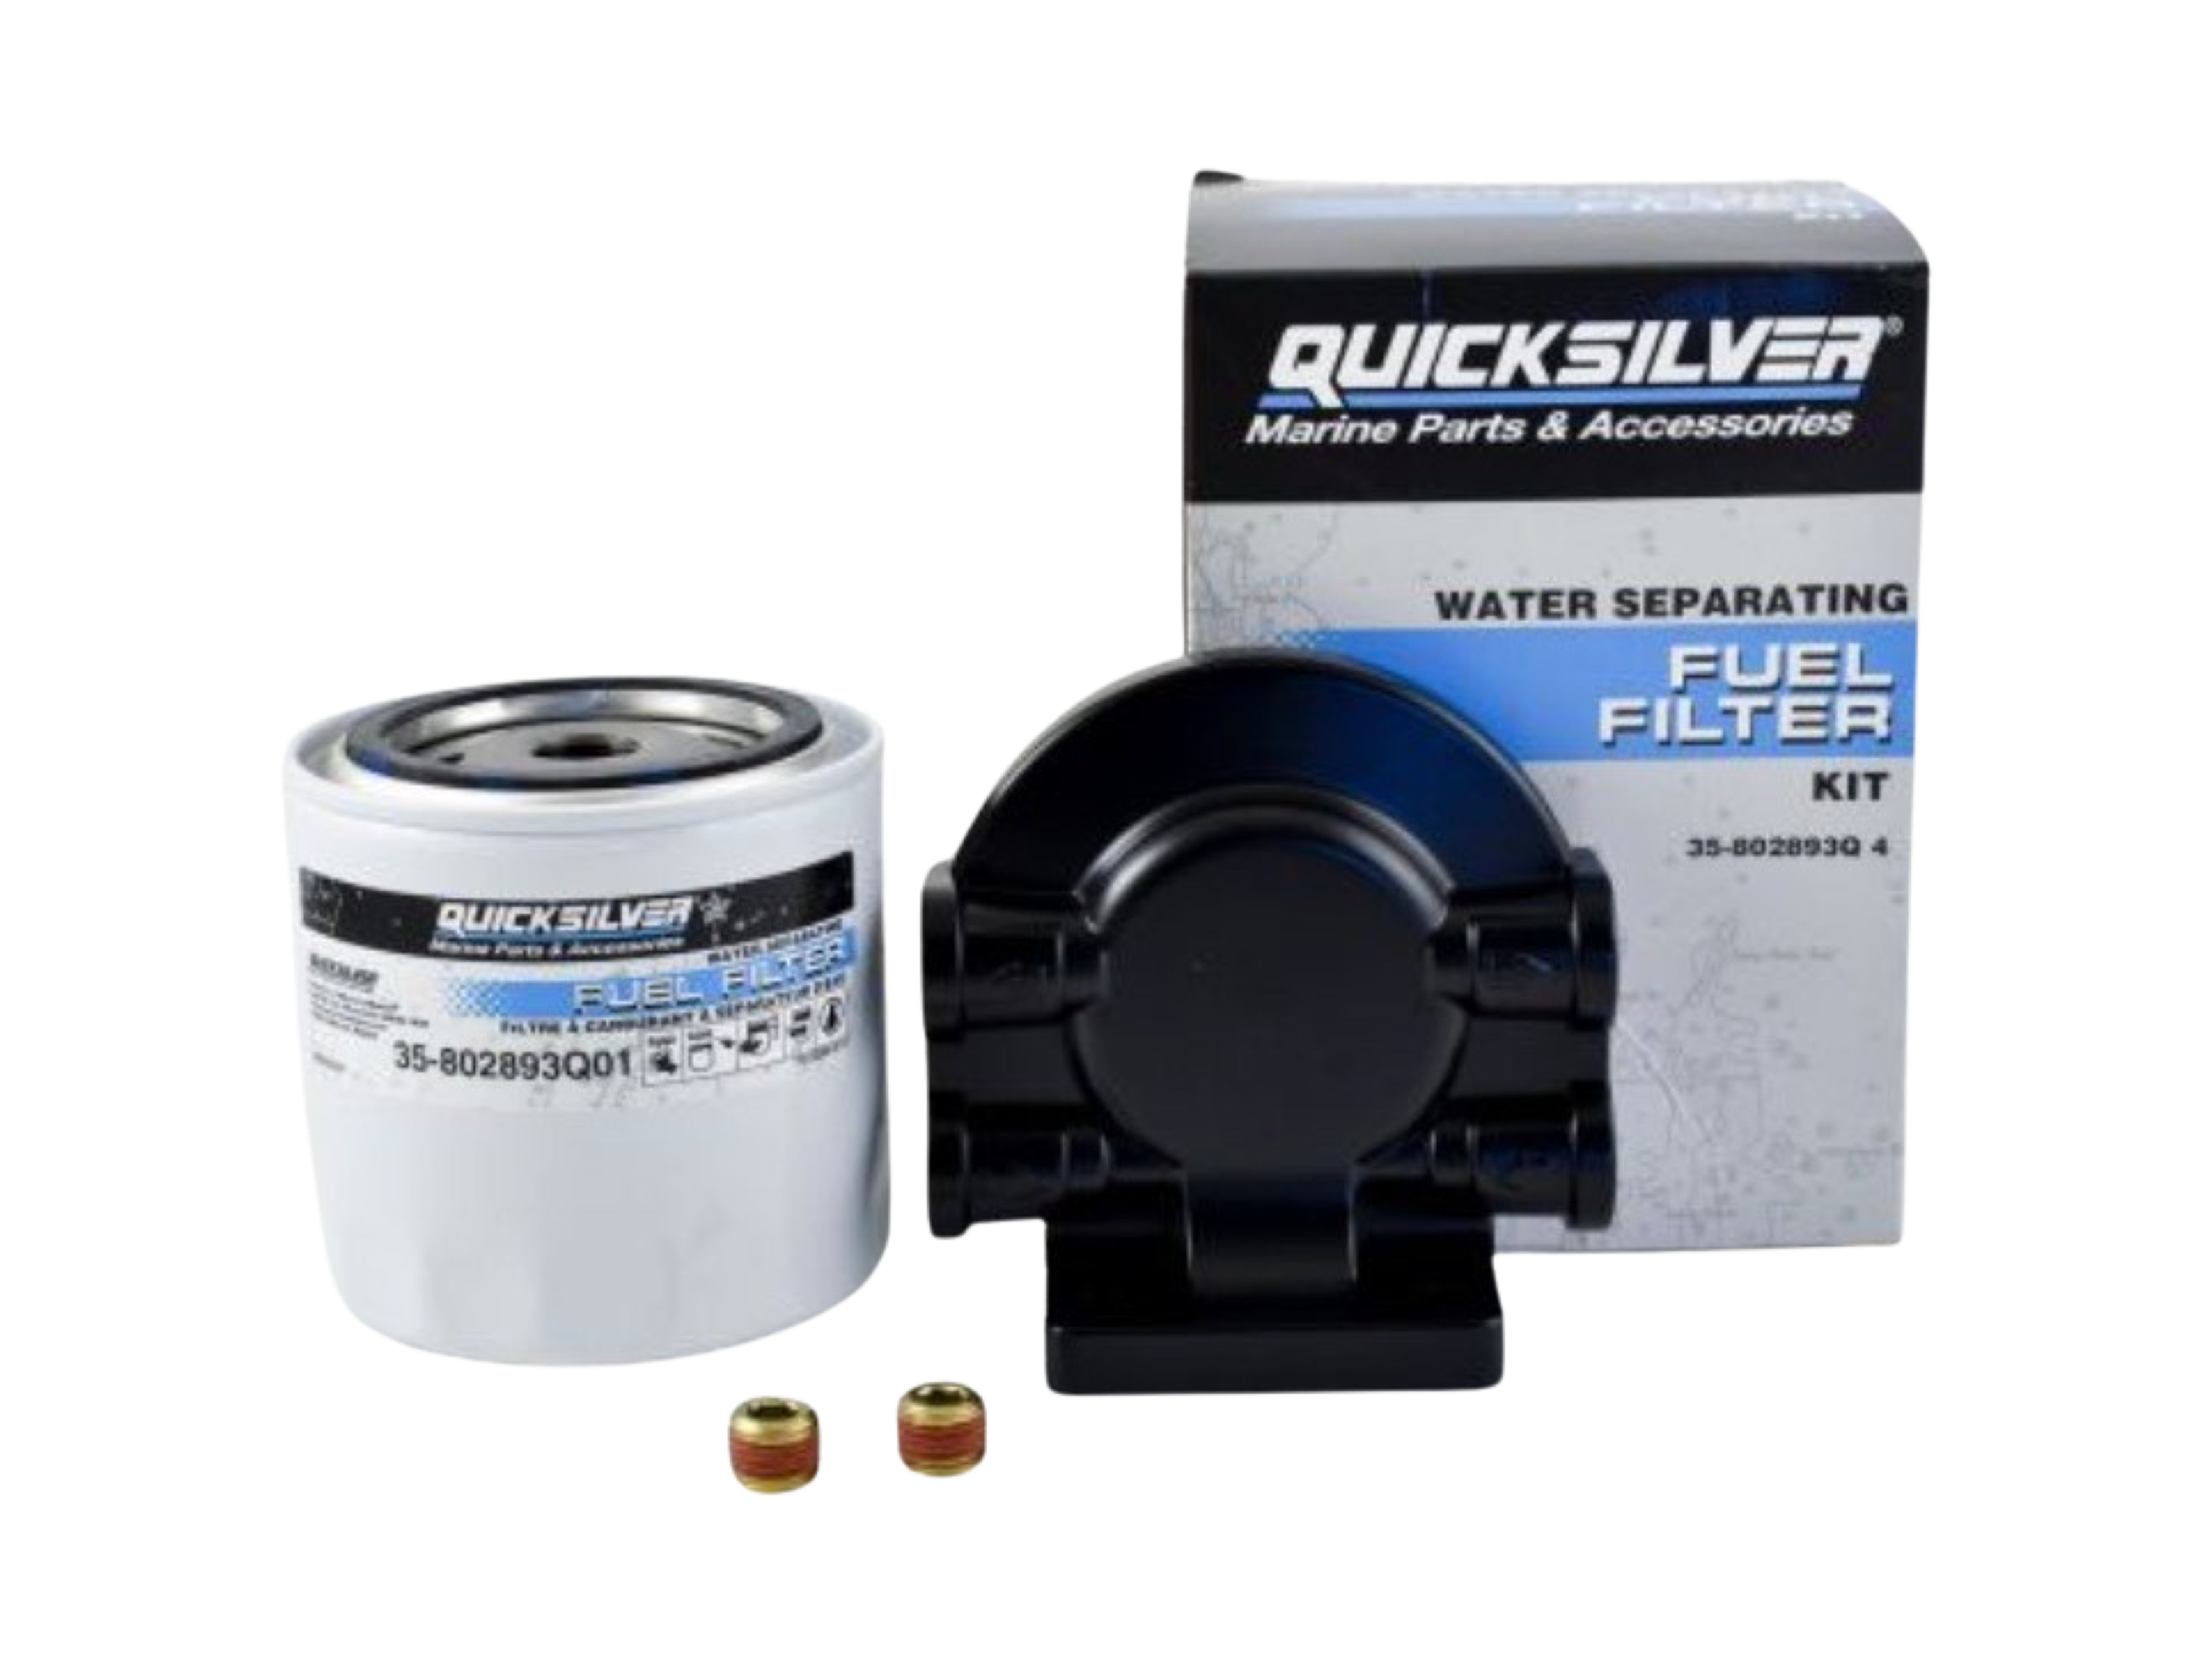 Fuel Filter Kit- Water Separating P/N: 802893Q4